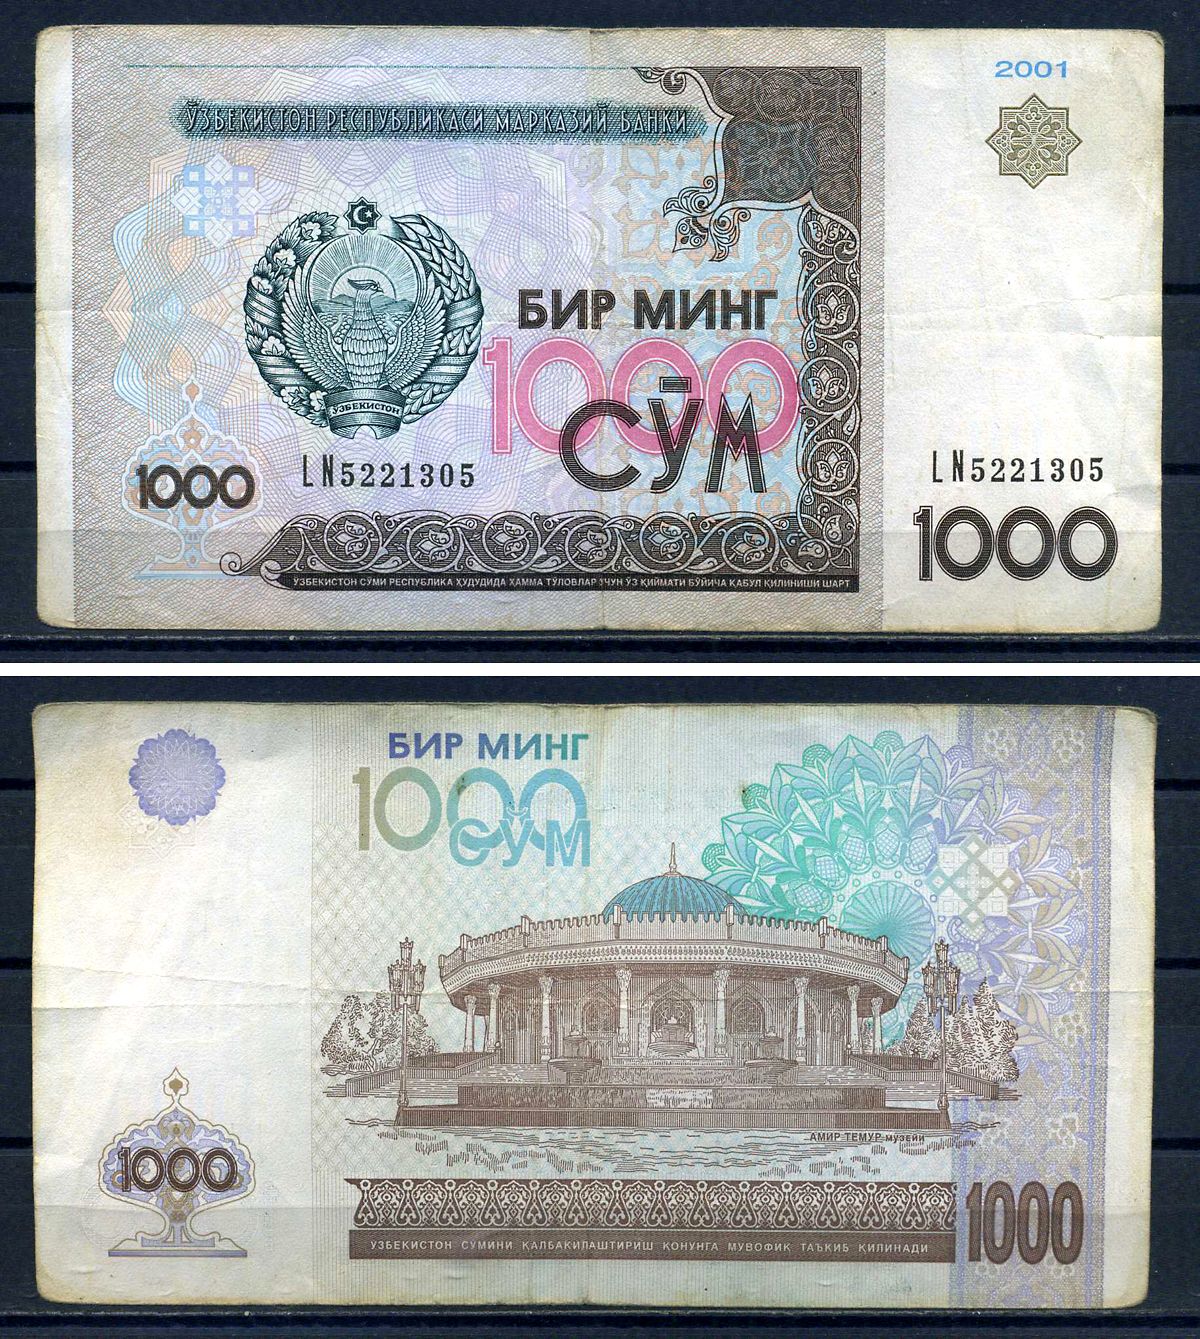 Узбекистан 1000 сколько. 1000 Сум фото. Рубл Узбекистан 1000. Изображение 200 тысяч сум. 1000 Sum qancha gram.